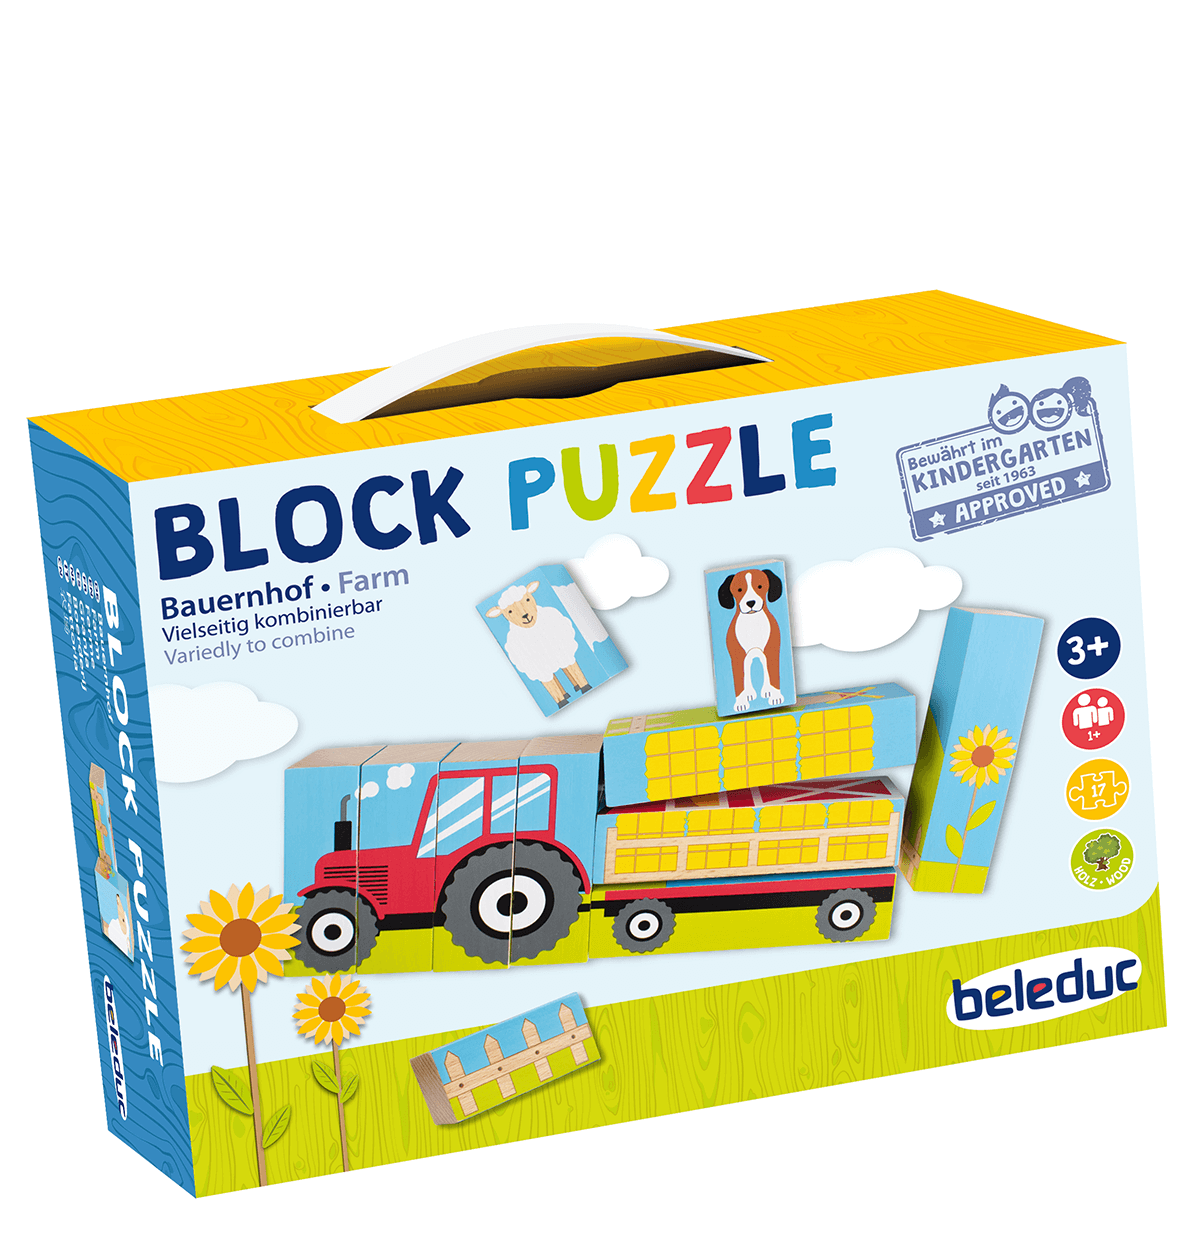 Blockpuzzle Farm